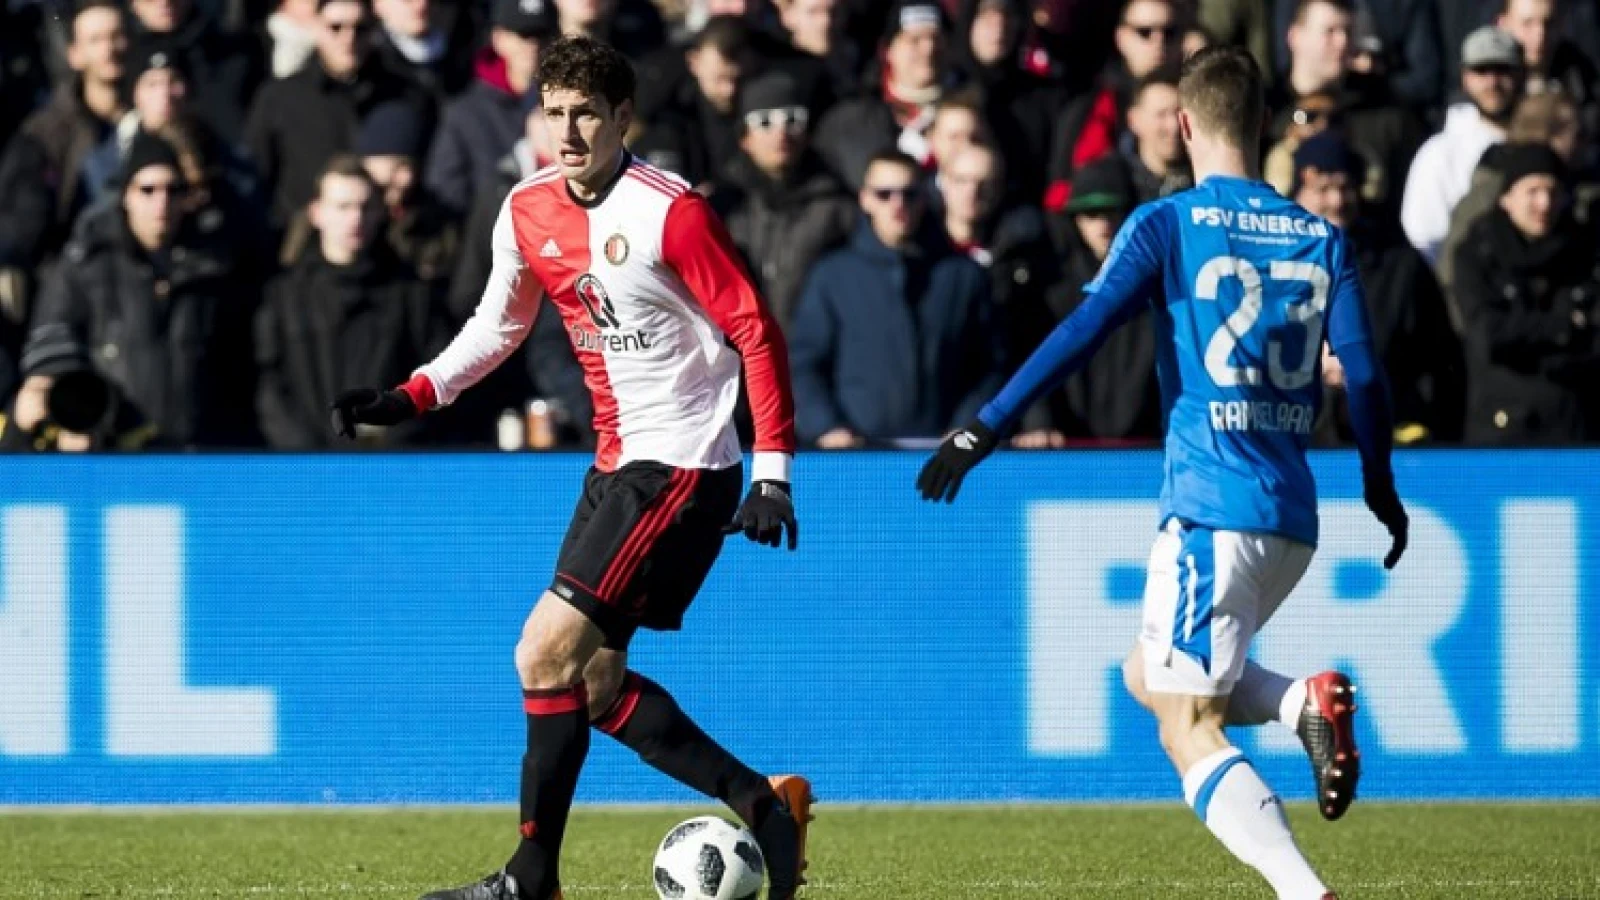 LIVE | Feyenoord - PSV 1-3 | Einde wedstrijd